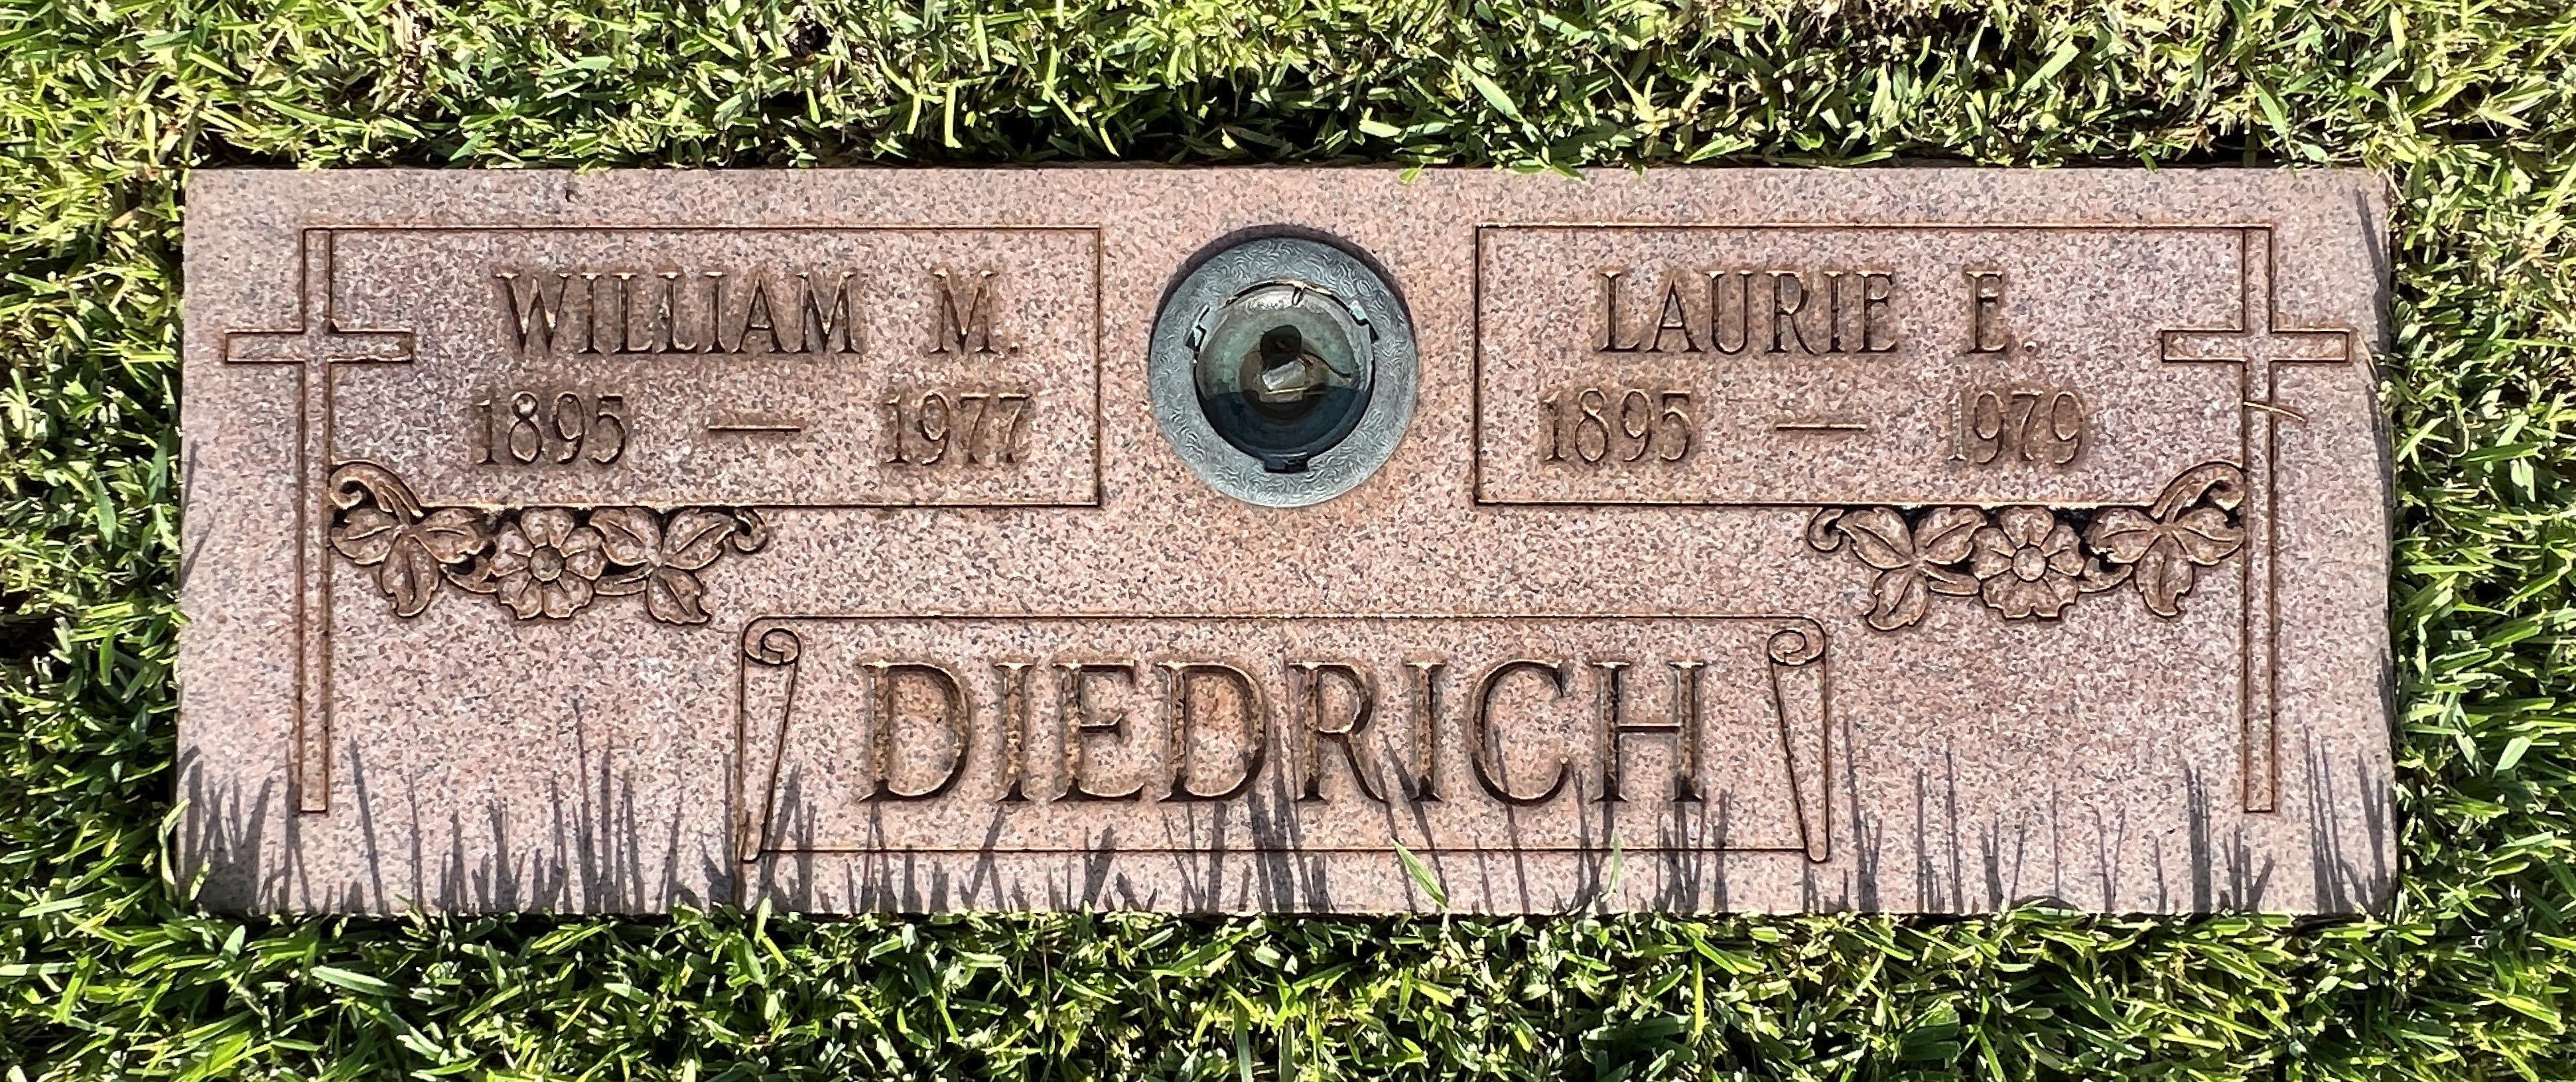 Laurie E Diedrich